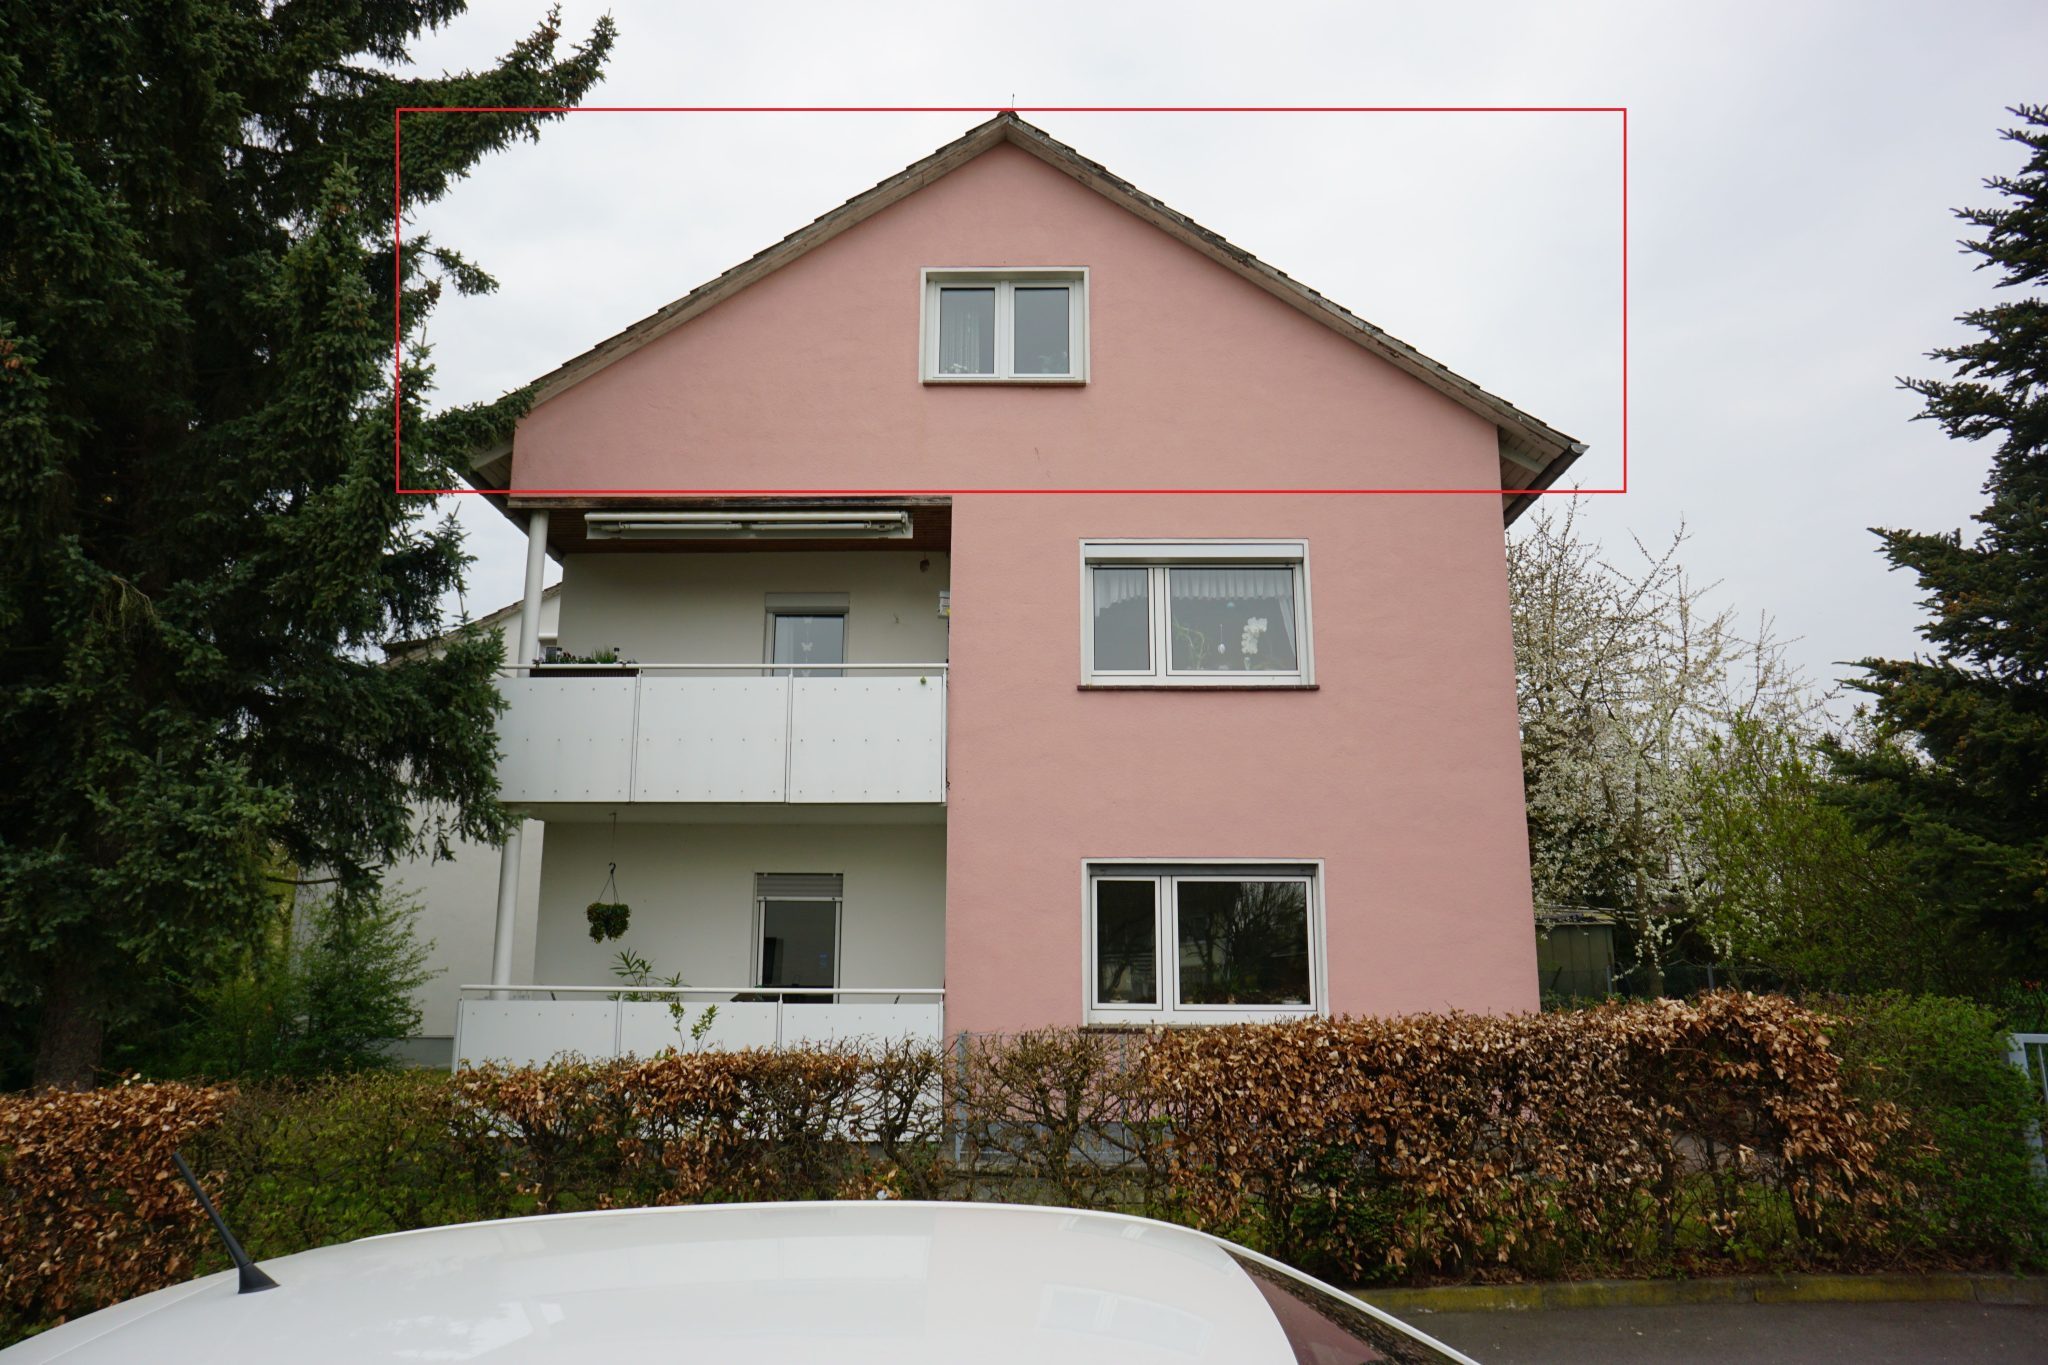 König Immobilien GmbH - Immobilienangebot - 36304 Alsfeld - Alsfeld - Etagenwohnung - Dachgeschosswohnung in ruhiger Lage von Alsfeld! KEINE KÄUFERPROVISION!